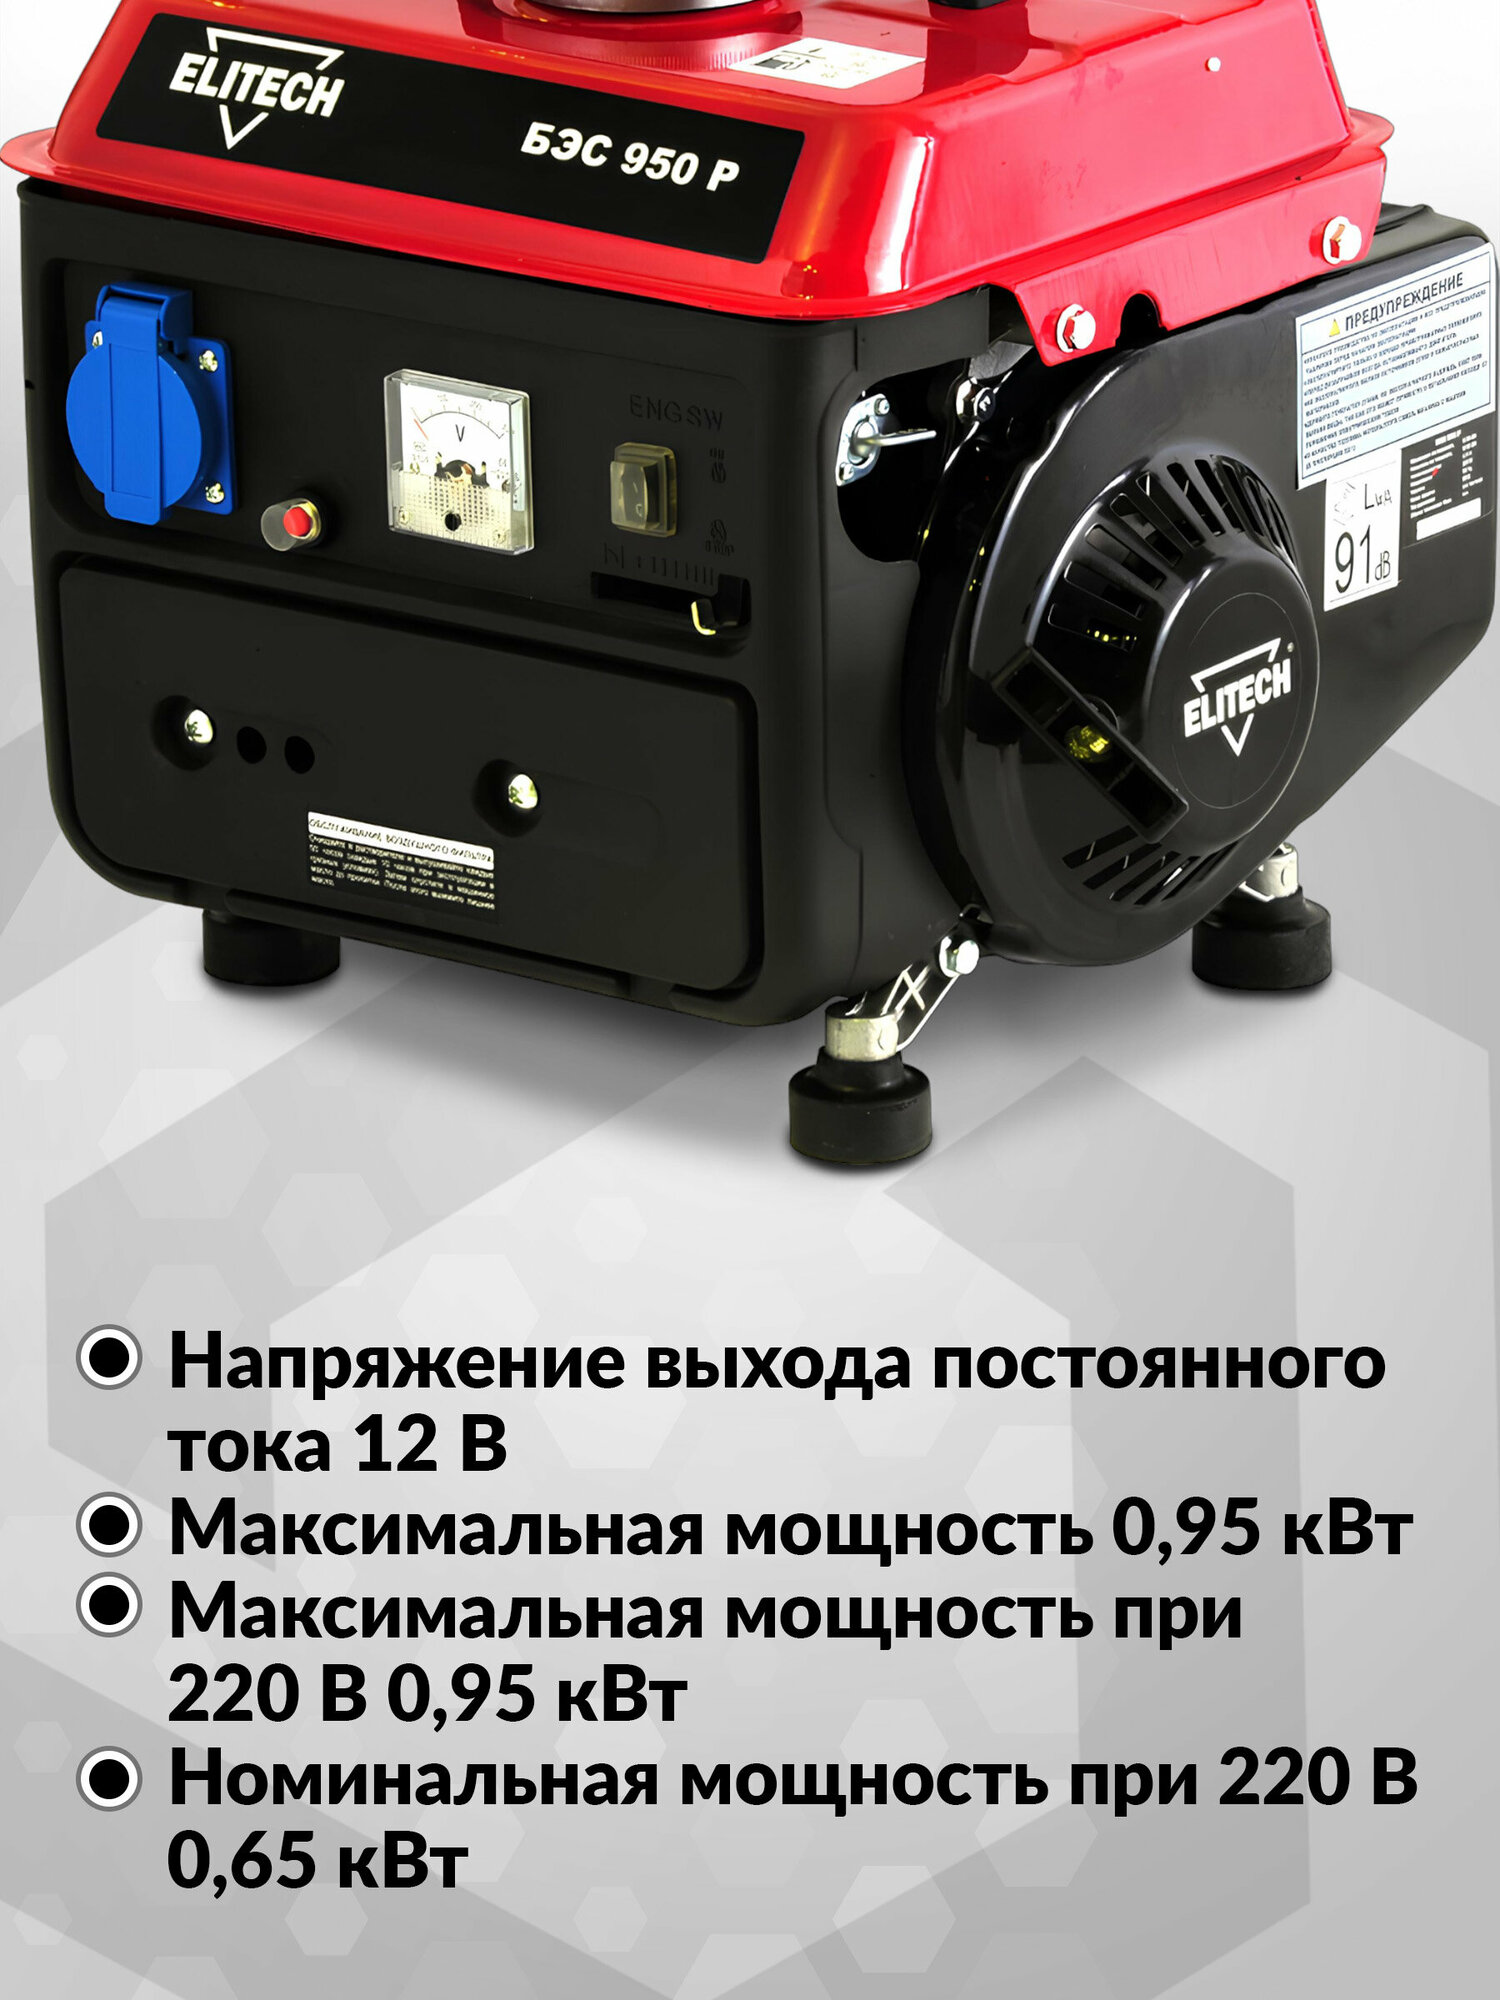 Бензиновый генератор Elitech - фото №11